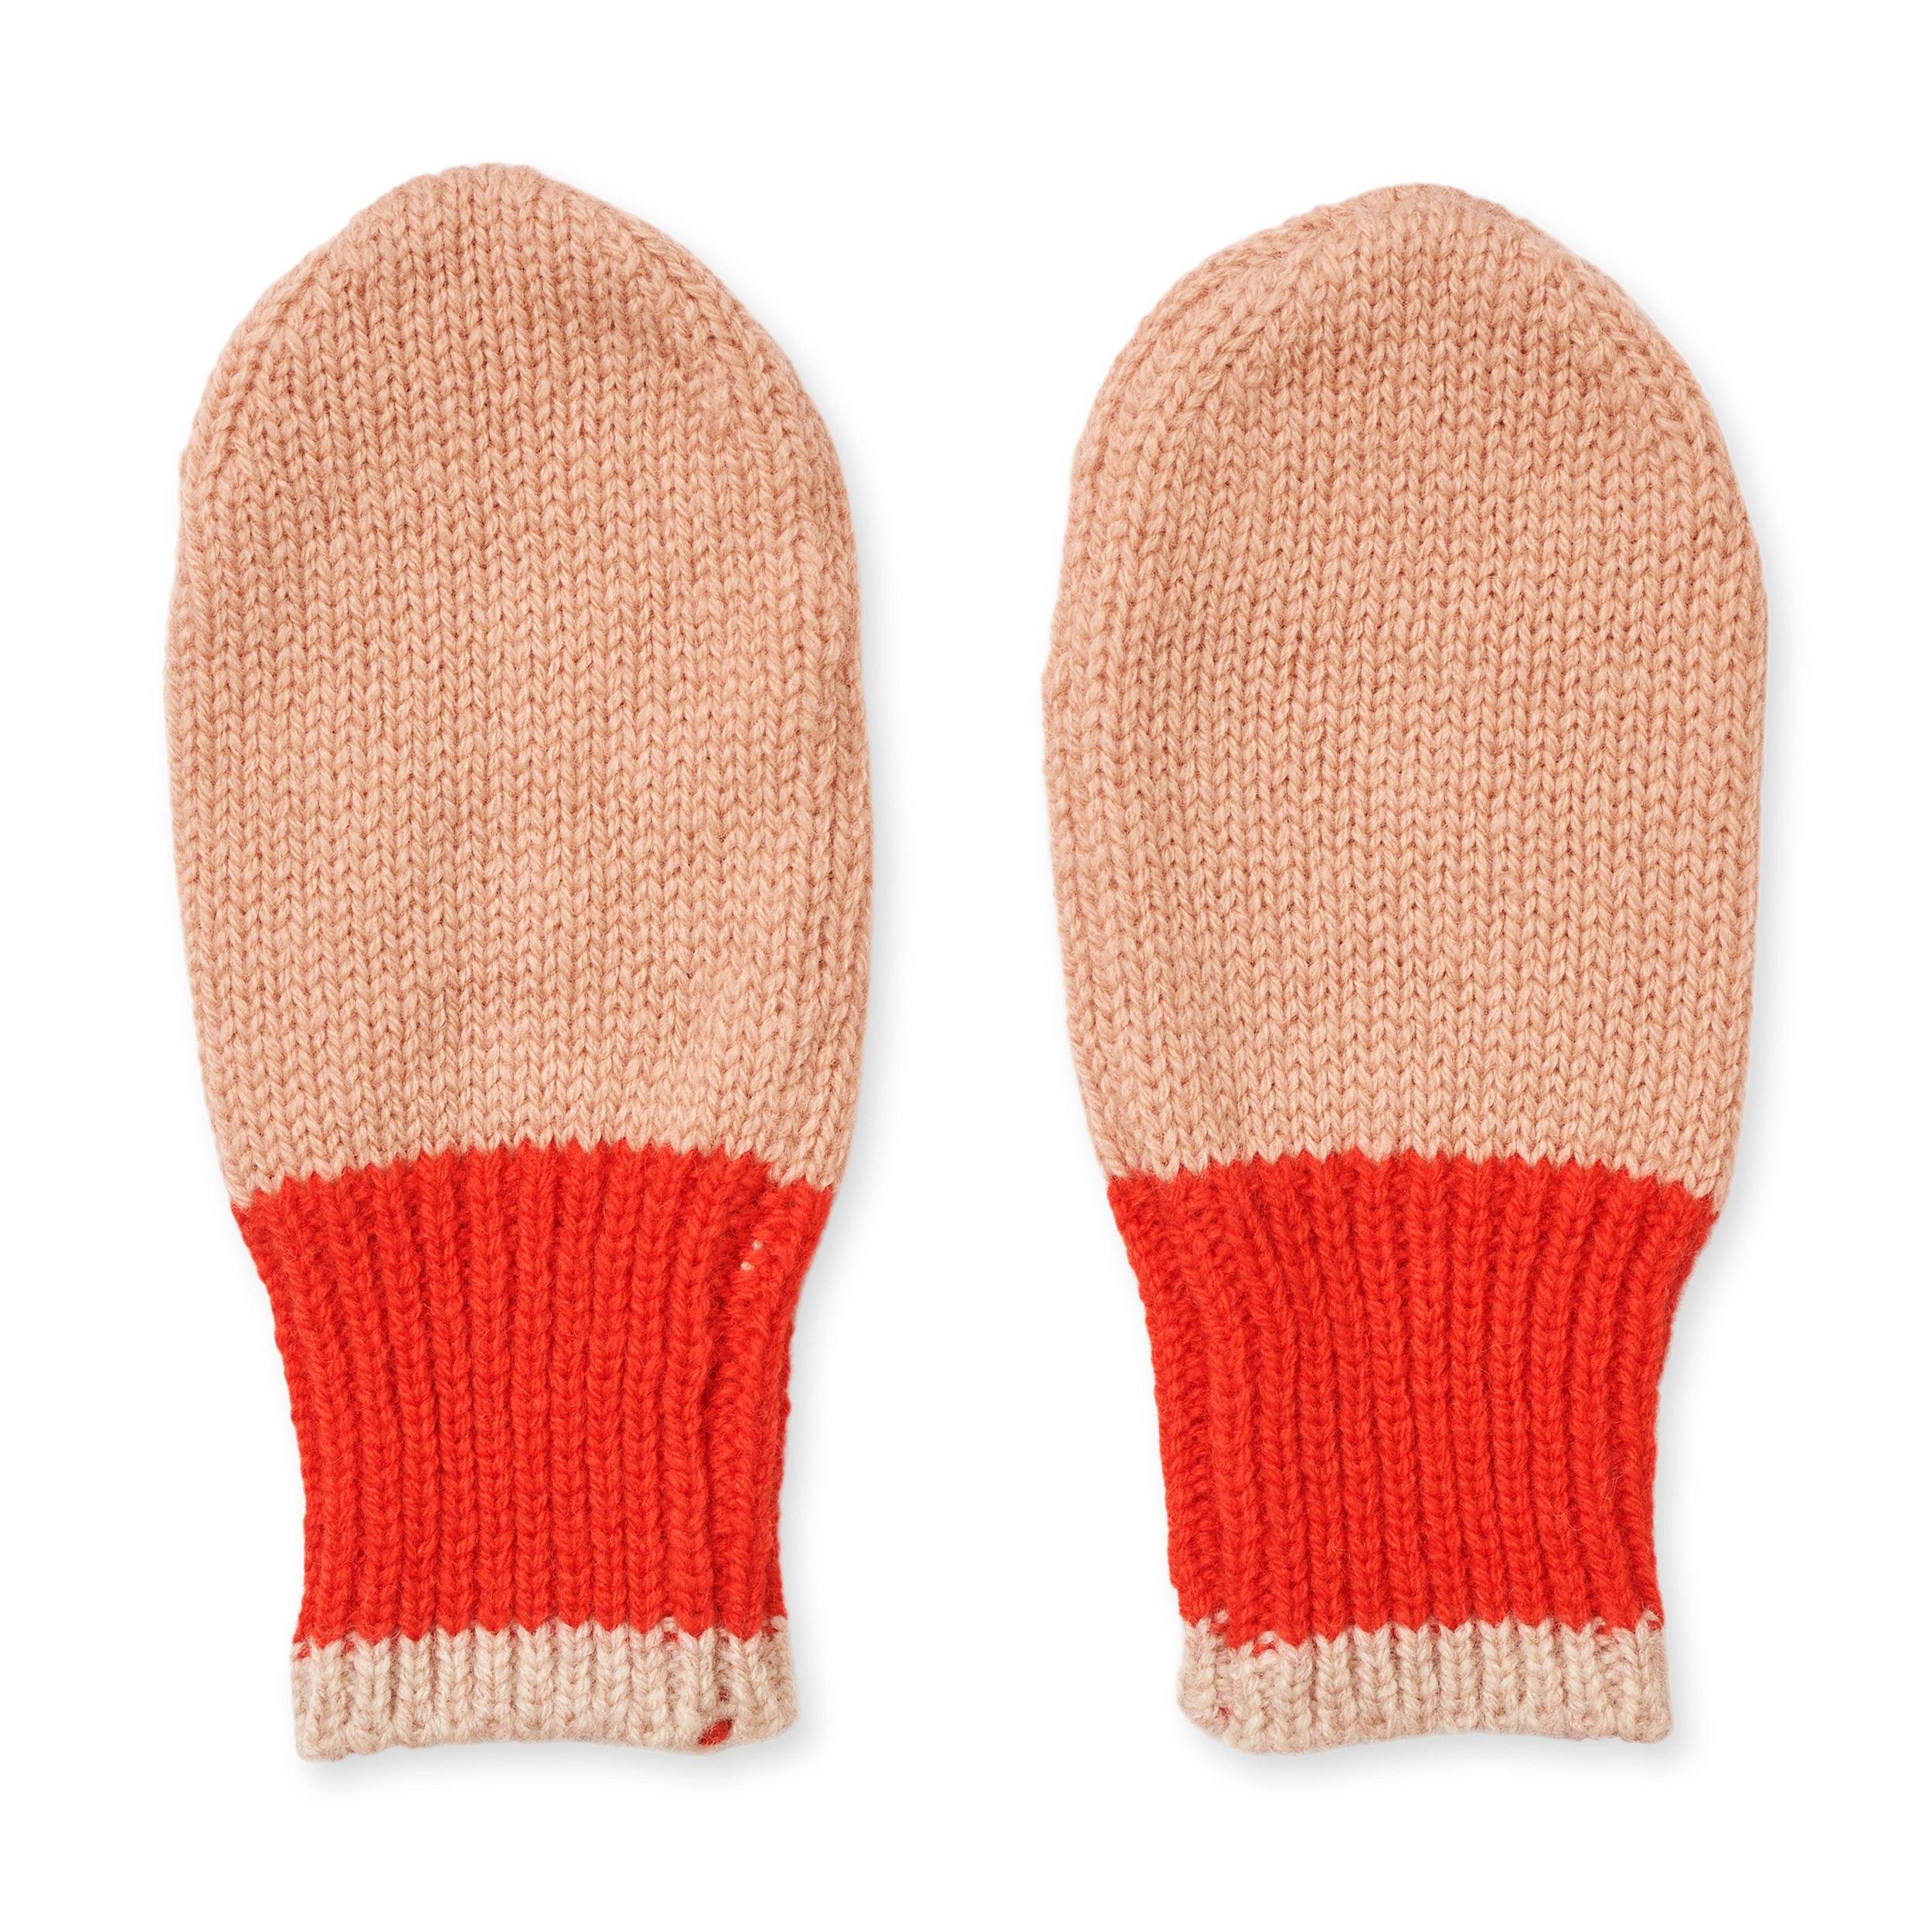 Liewood: pipi bébé 6-12 m gants pour enfants en laine mérinos